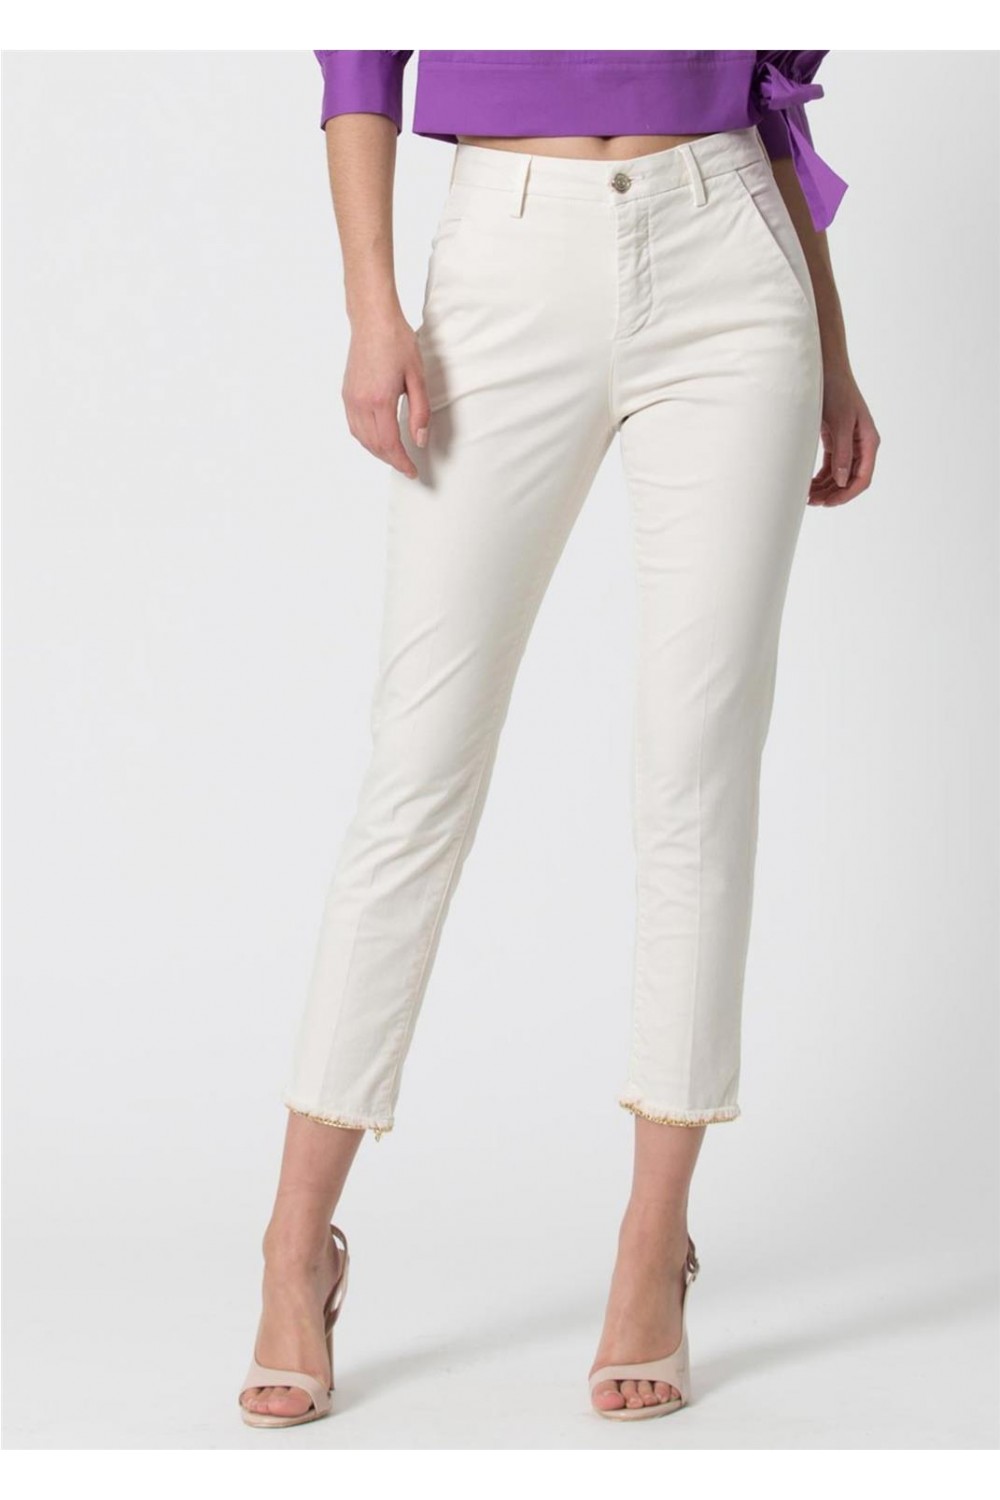 Pants Blanco Para Mujer